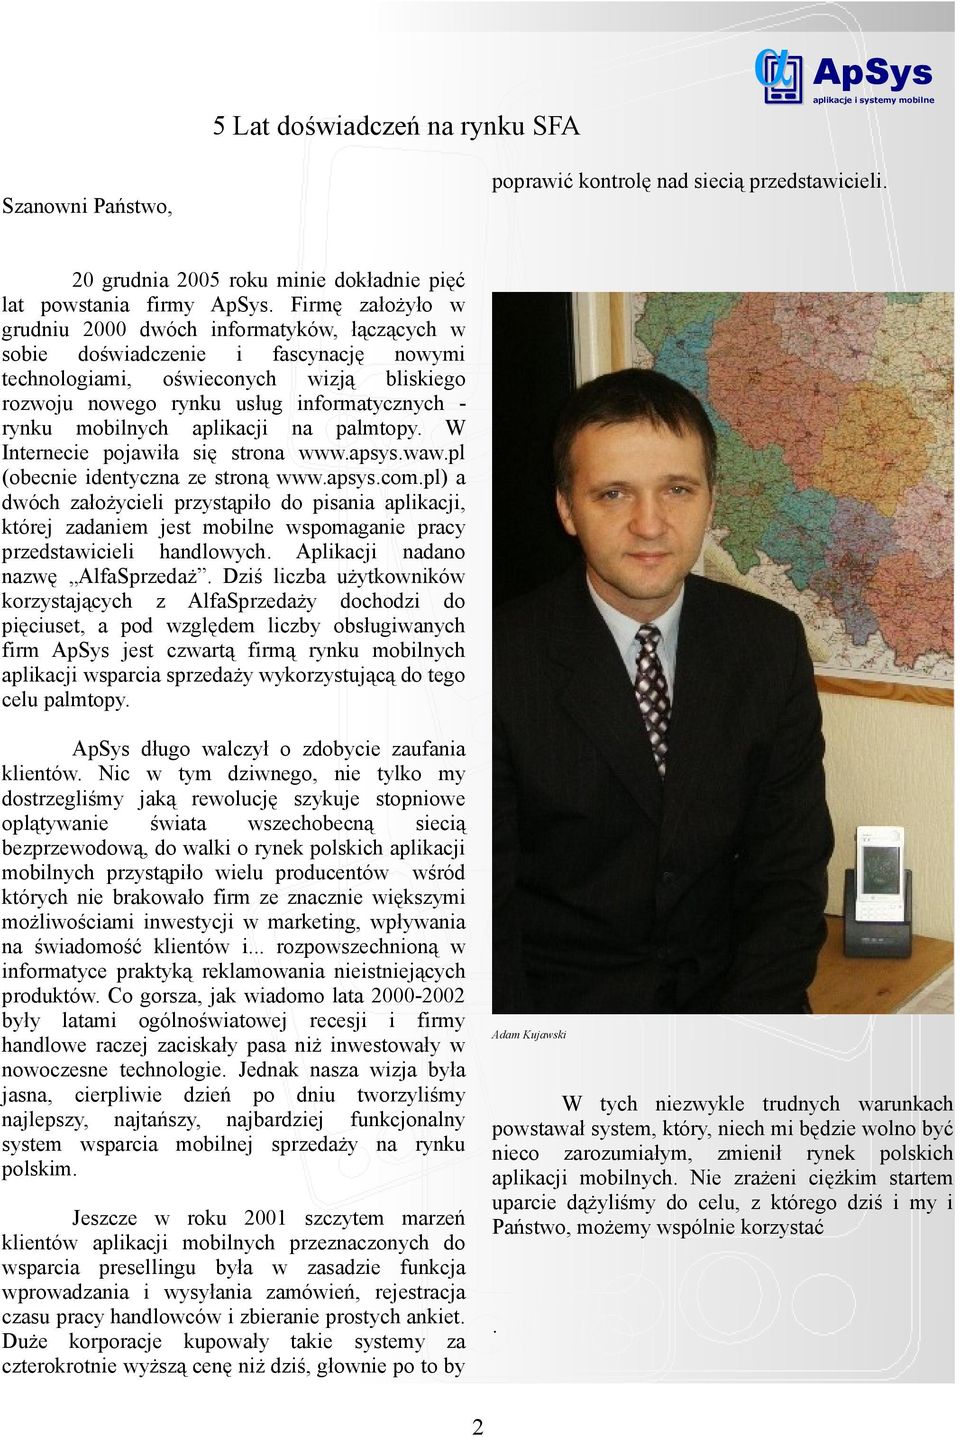 mobilnych aplikacji na palmtopy. W Internecie pojawiła się strona www.apsys.waw.pl (obecnie identyczna ze stroną www.apsys.com.